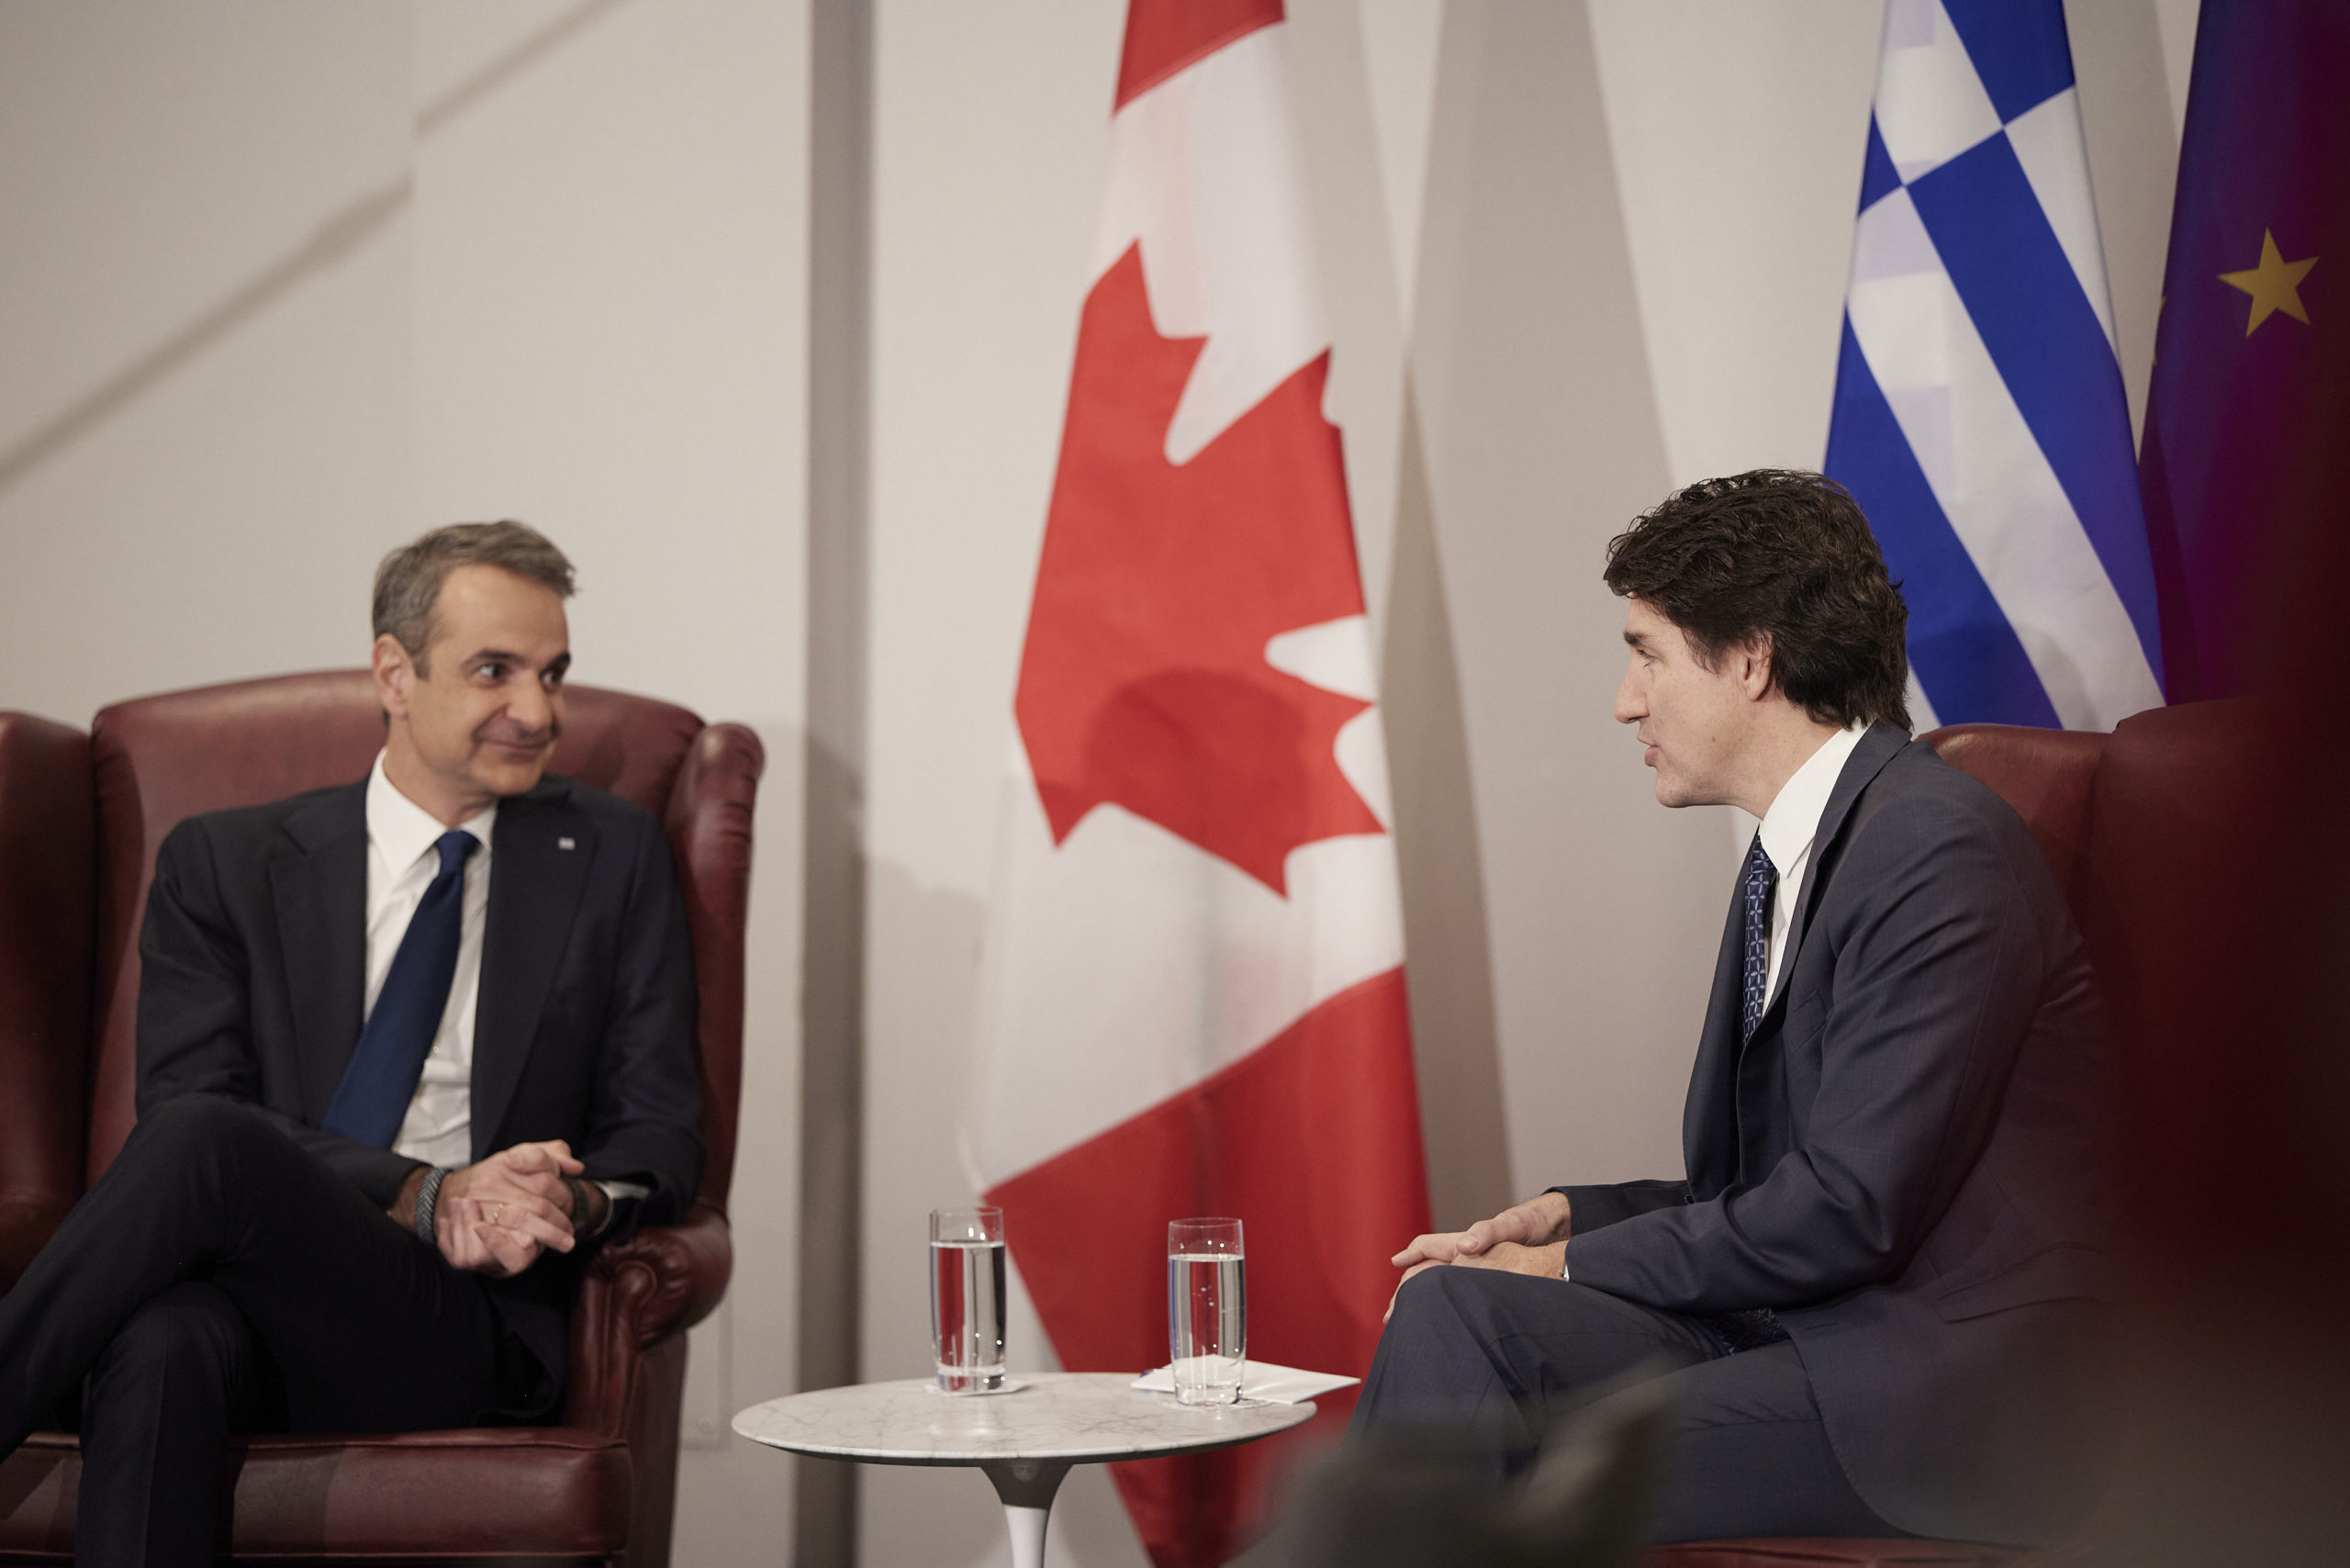 Κοινή δήλωση Μητσοτάκη – Τριντό: Η φιλία μεταξύ Ελλάδας και Καναδά αντανακλάται στους στενούς στρατηγικούς, οικονομικούς και πολιτιστικούς δεσμούς μεταξύ των δύο χωρών